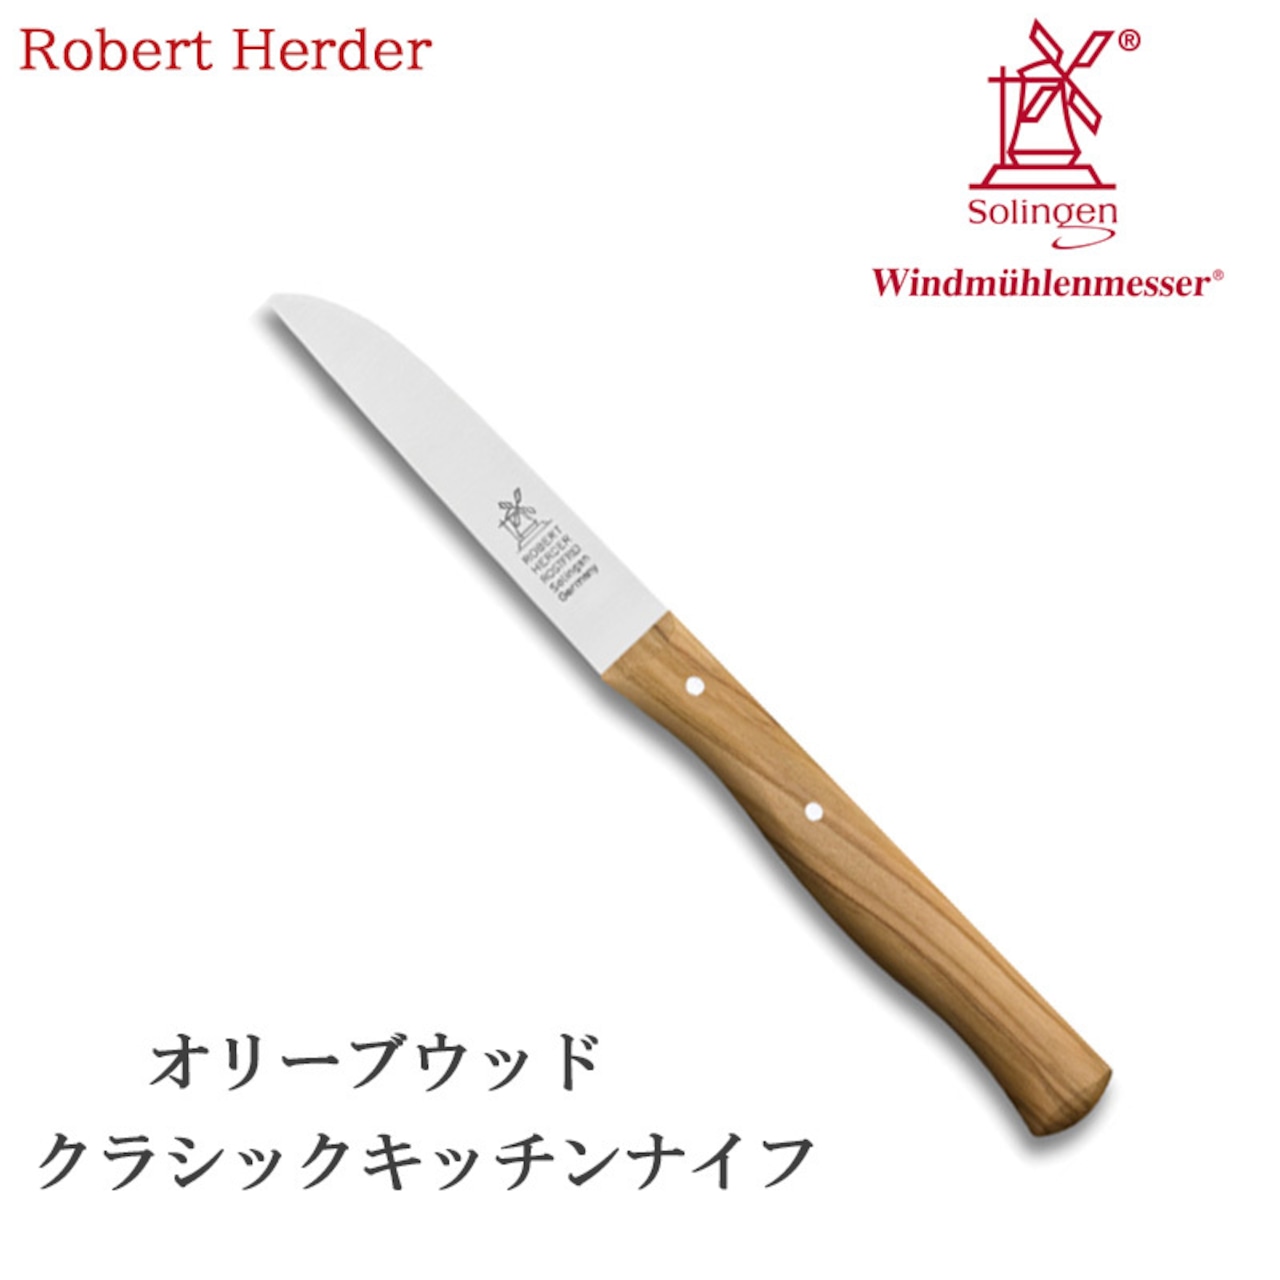 ロベルトヘアダー オリーブウッド クラシック キッチンナイフ 1782.325.05 テーブルナイフ 果物ナイフ